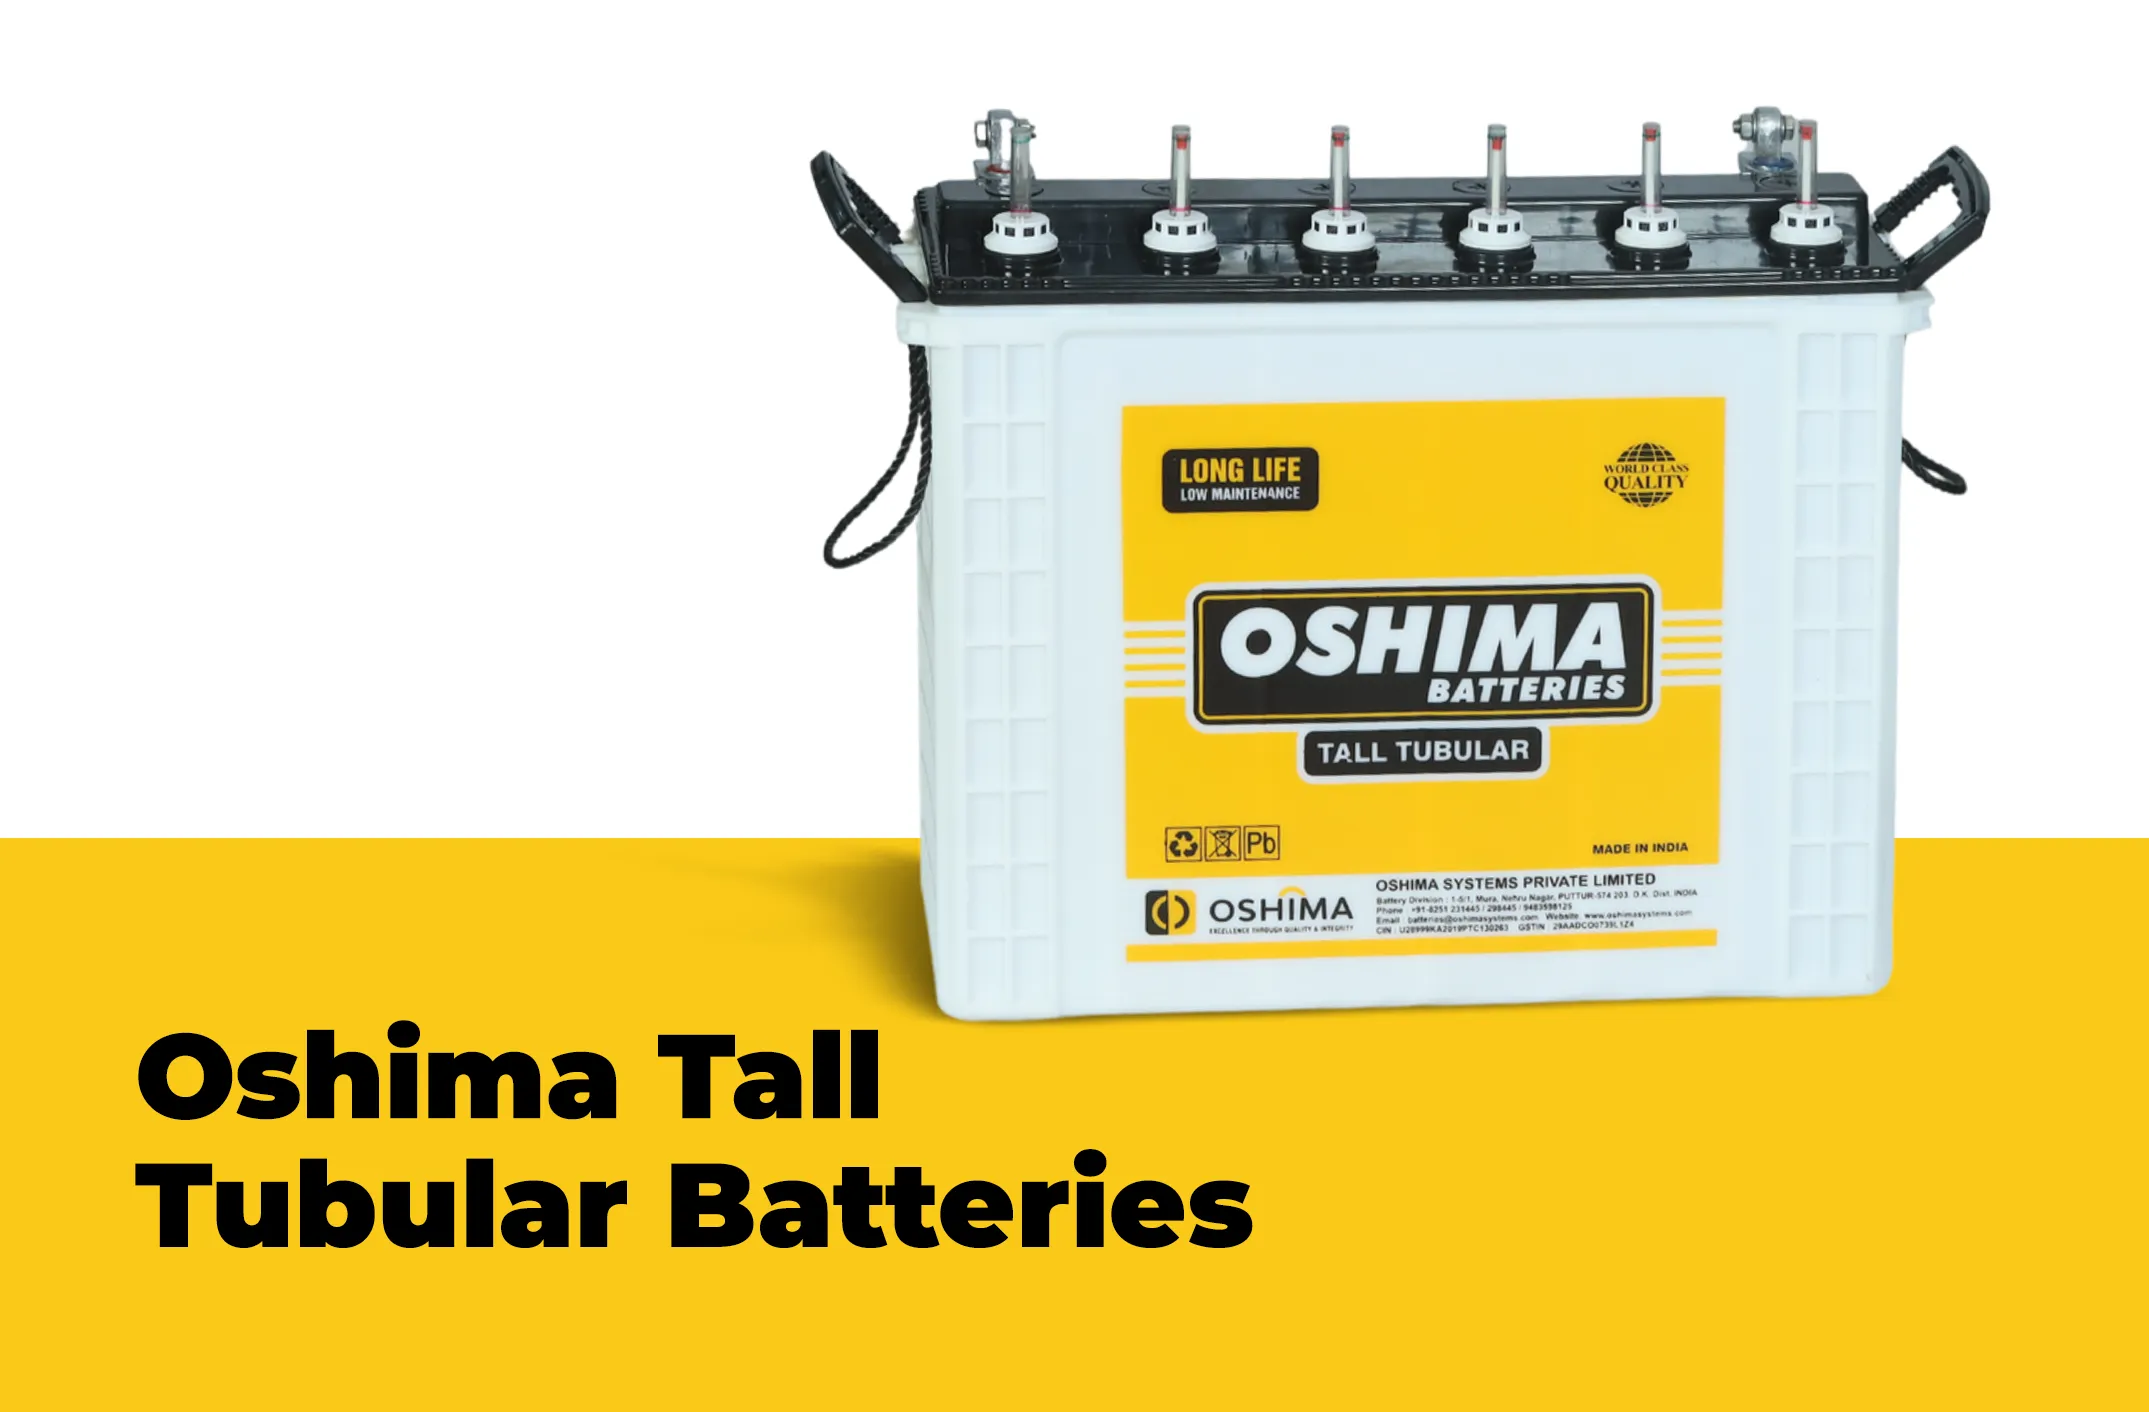 oshima-tall-tubular-batteries-mobile